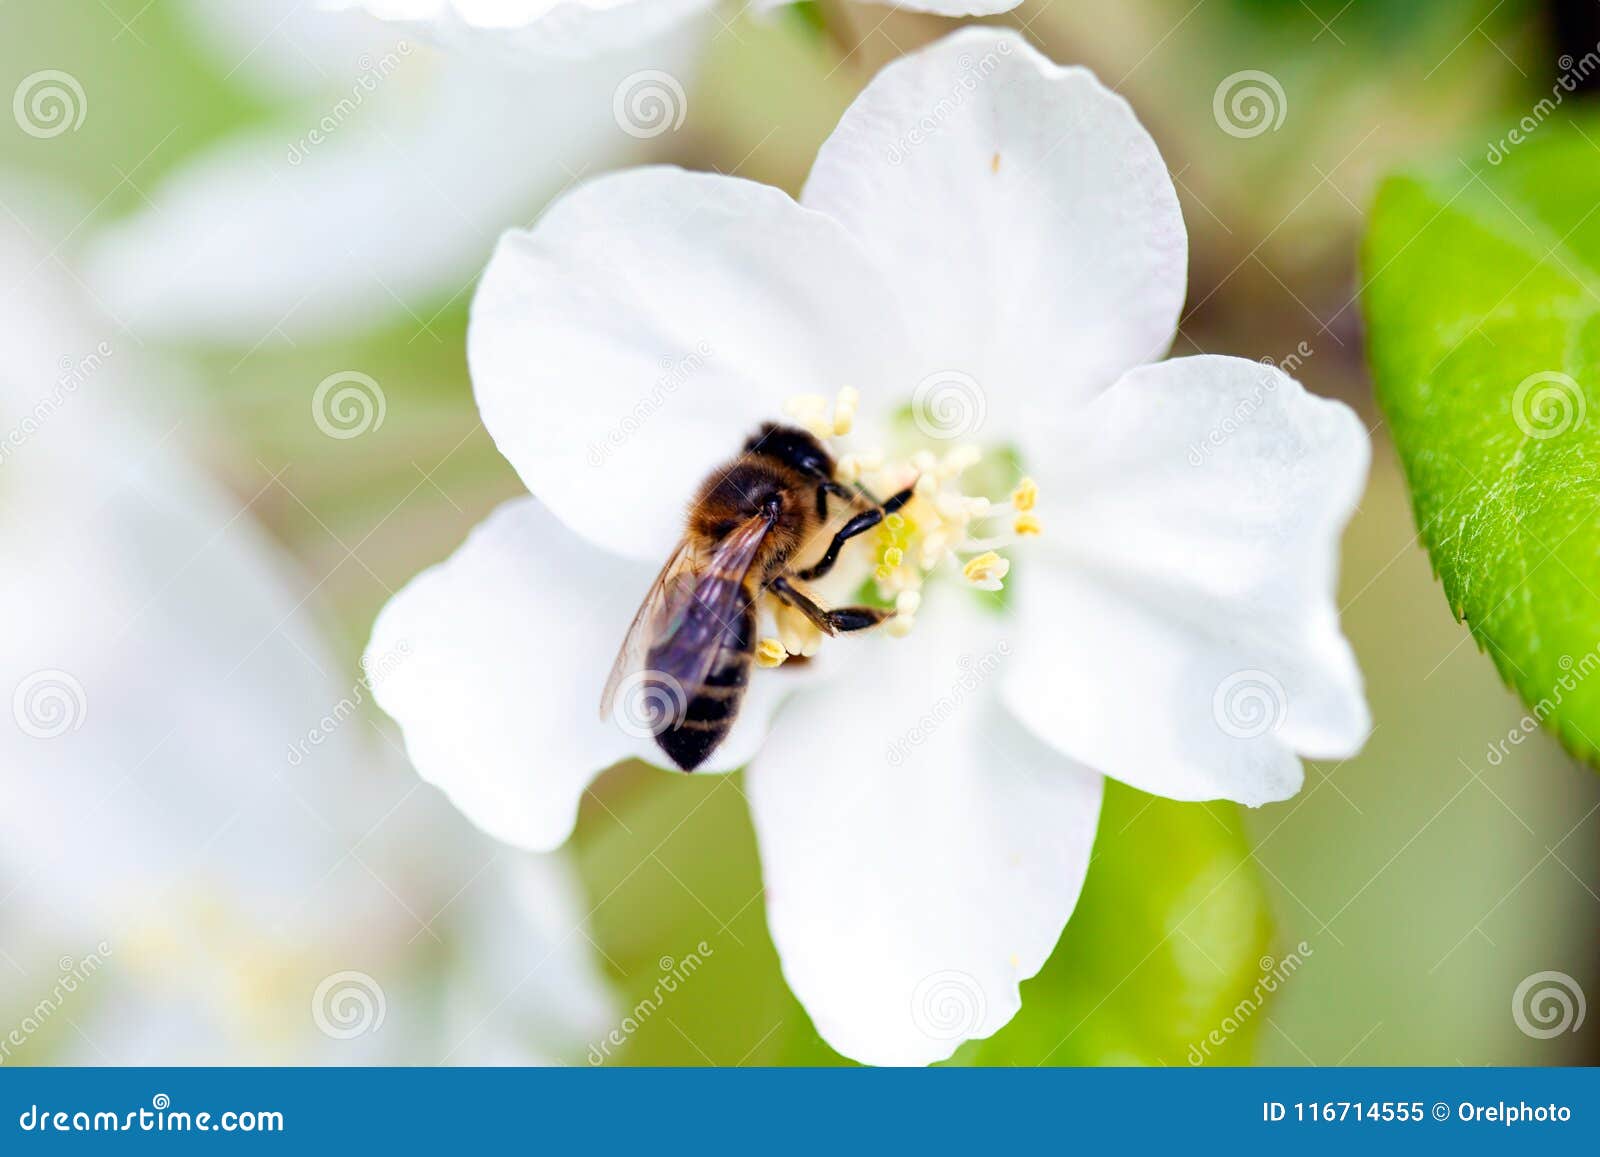 Какие отношения между яблоней и домашней пчелой. Пчела на цветке яблони. Пчела эпл. Пчелы и нераскрывшийся цветок яблони. Рамка яблони в цвету с пчелами рис.